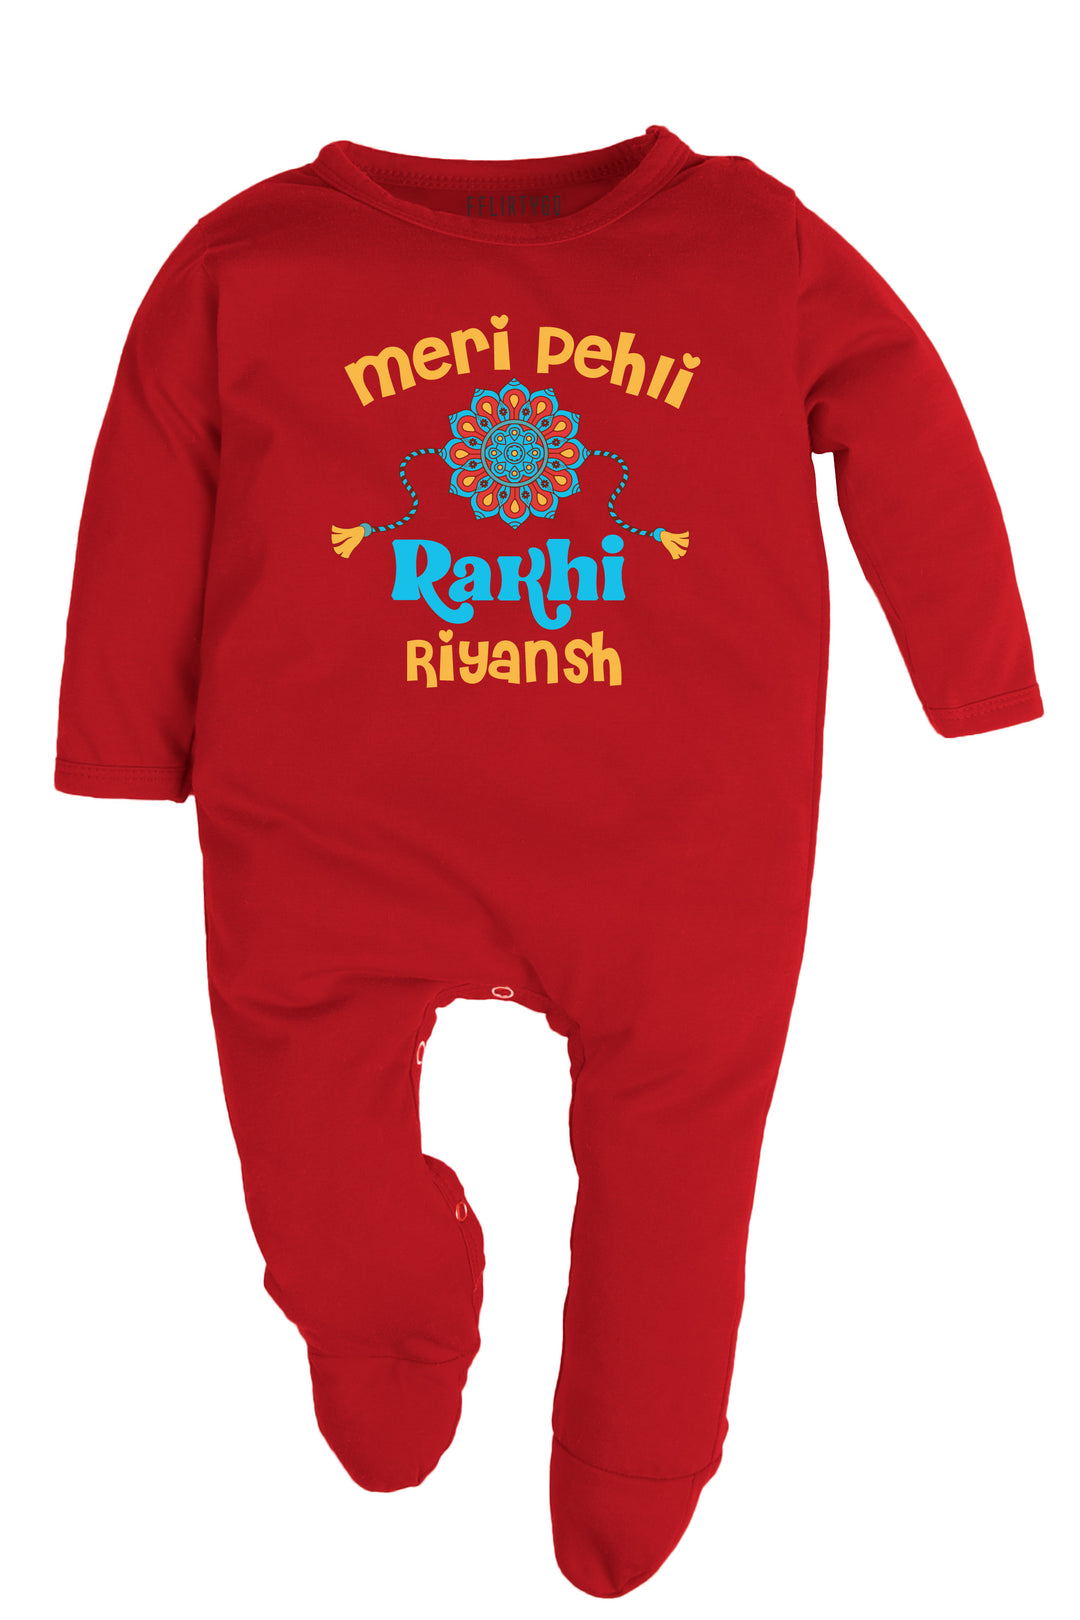 Meri Pehli Rakhi Baby Romper | Onesies w/ Custom Name